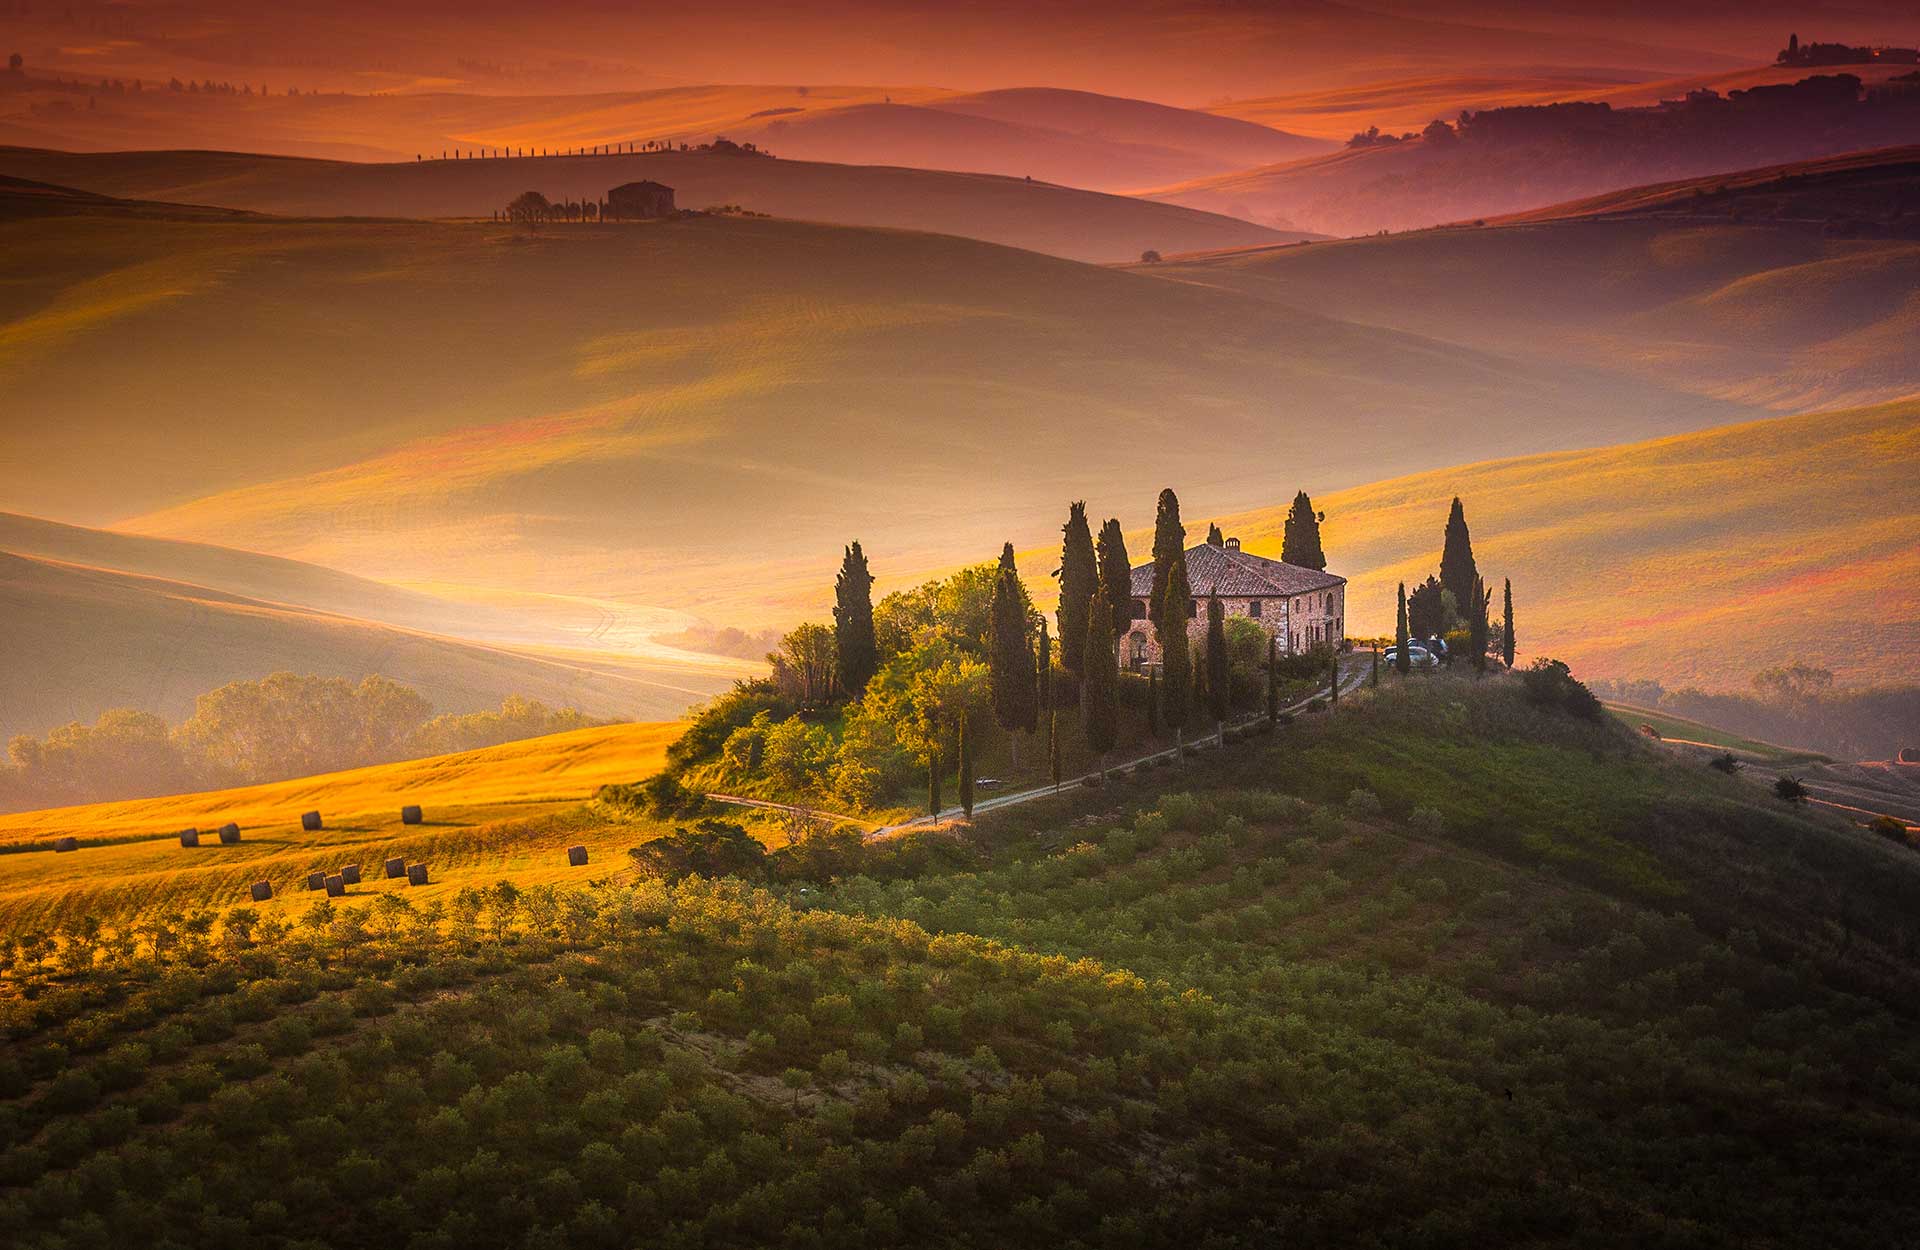 Vinsmaking i Toscana